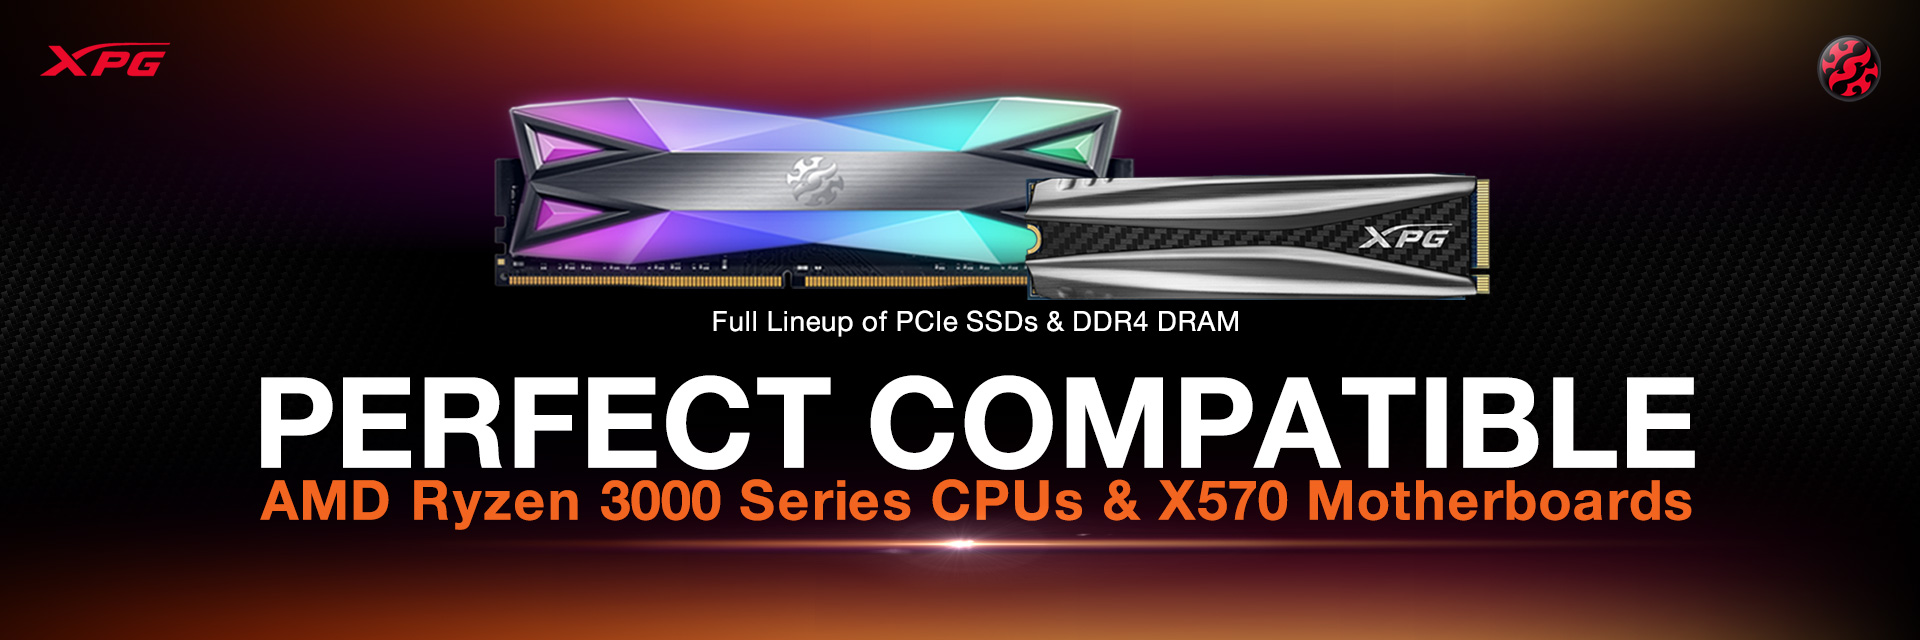 סידרת הכונני SSD ו4DDR RAM תואמים לסידרת מעבדי רייזן 3000 ולוחות אם מסידרת X570